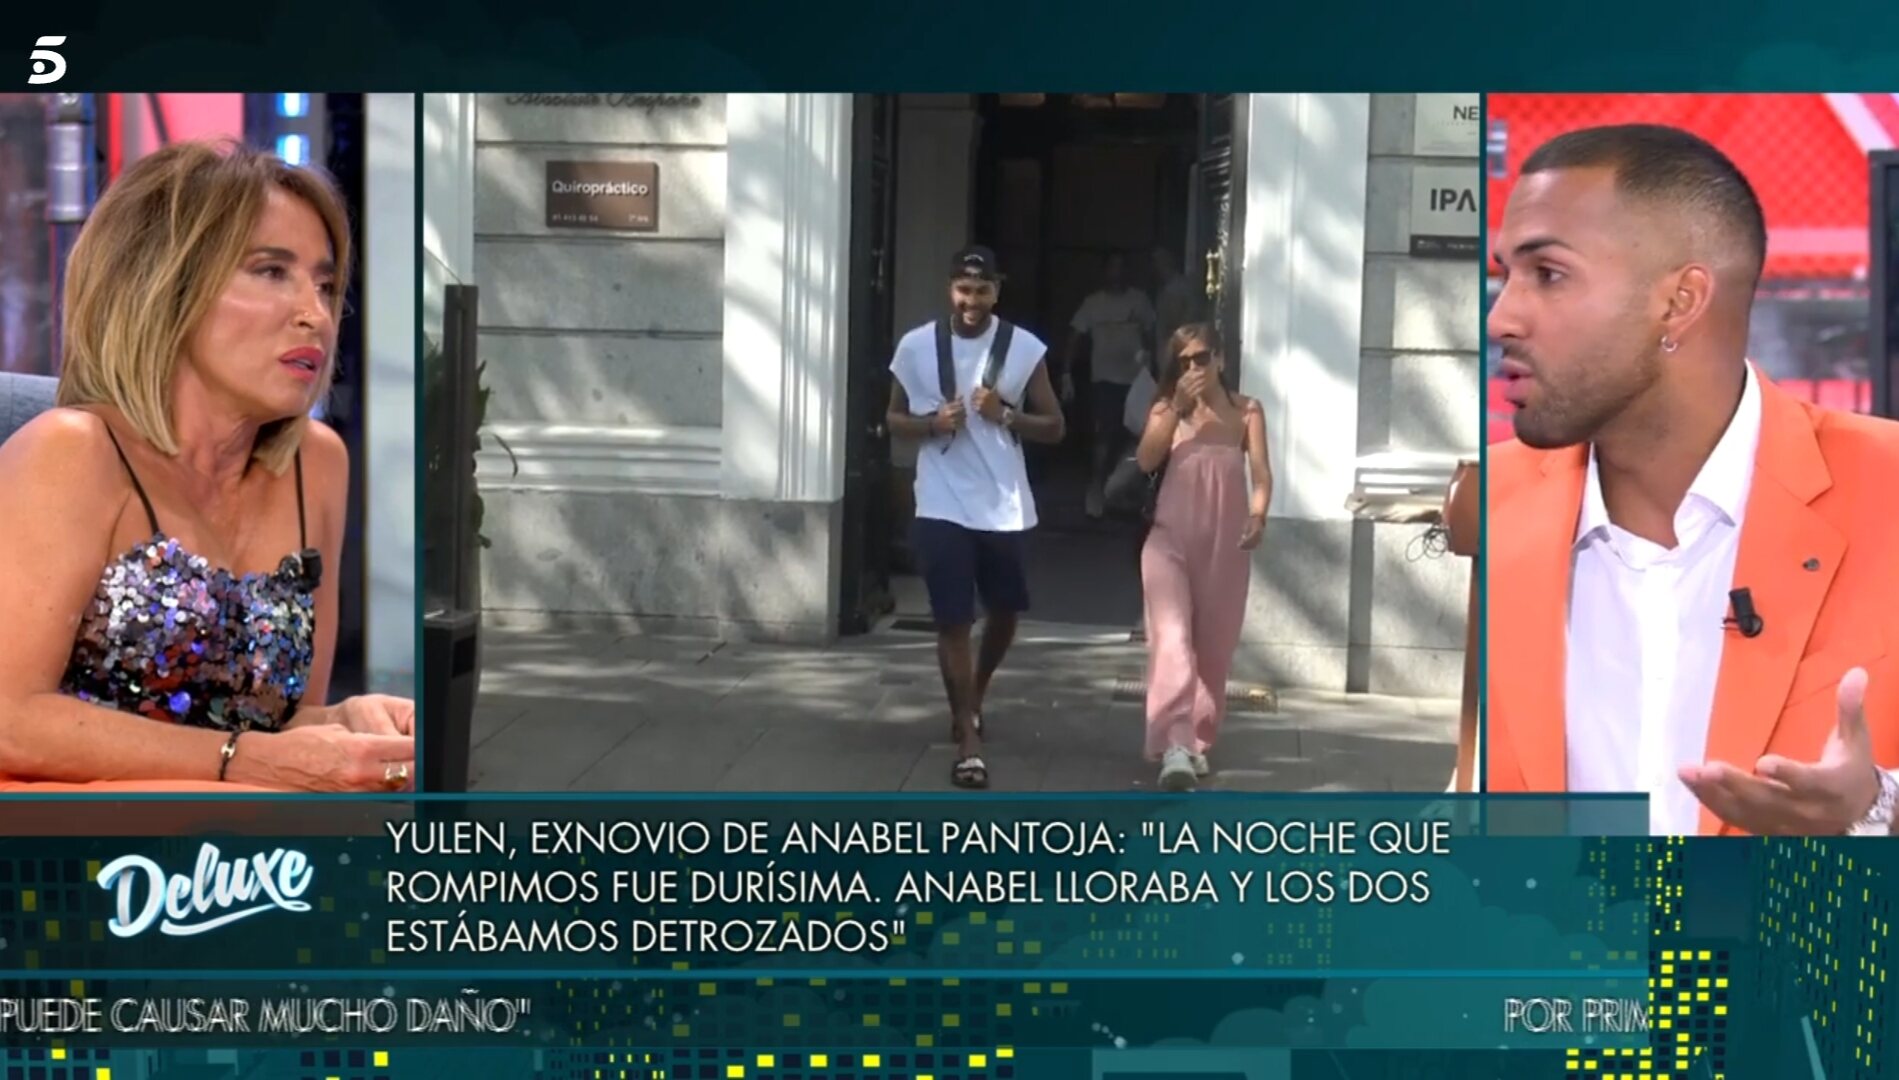 Yulen vuelve a hablar de su ruptura con Anabel Pantoja / Foto: Telecinco.es